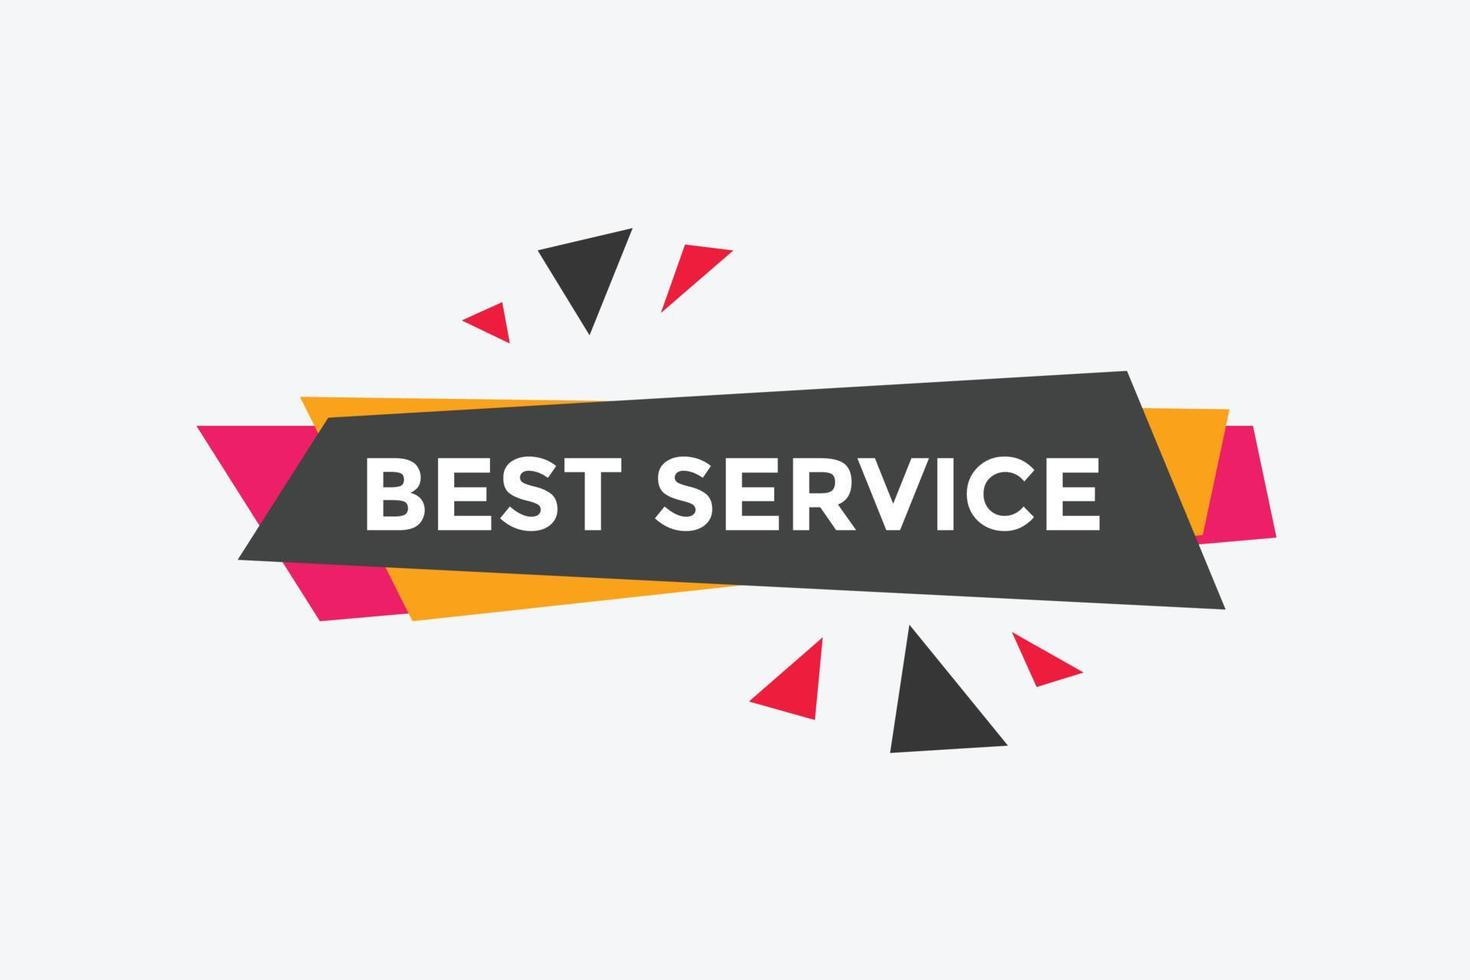 bäst service text knapp. bäst service Tal bubbla. bäst service färgrik webb baner. vektor illustration